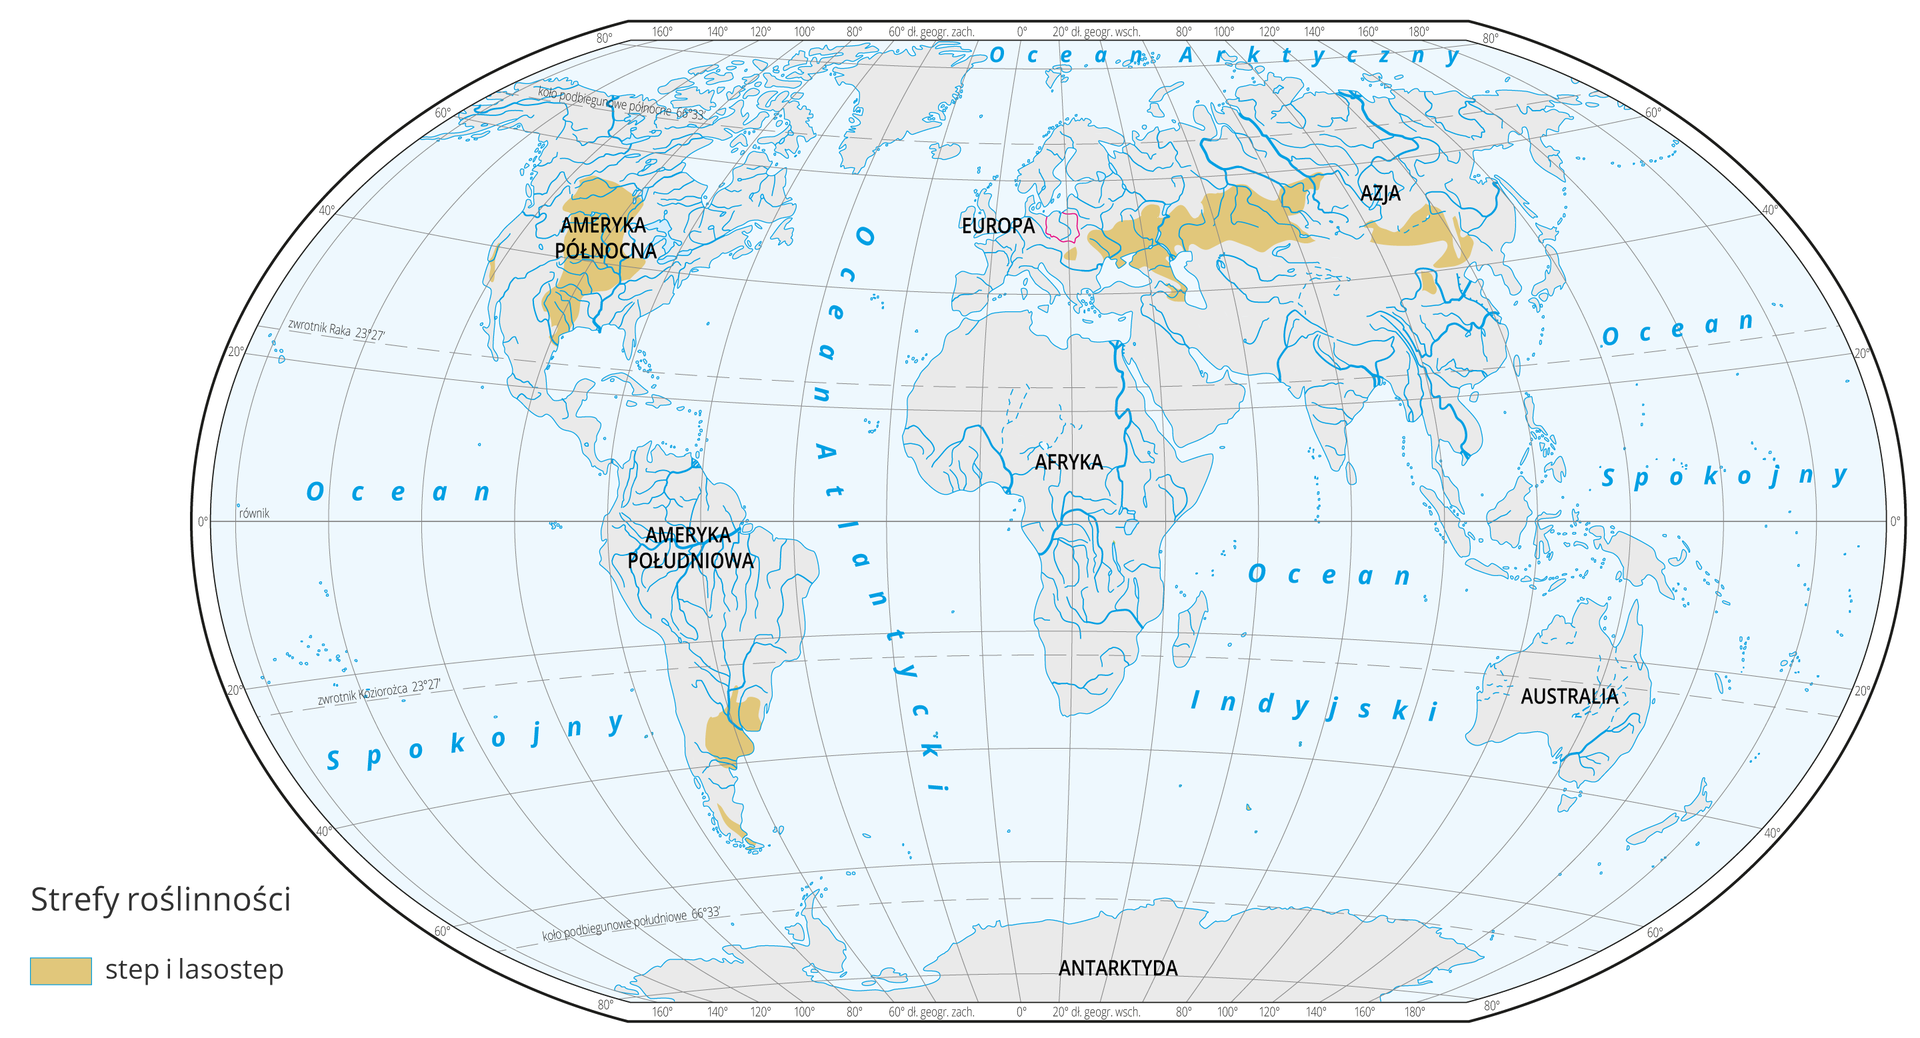 Mapa świata prezentuje występowanie stepu i lasostepu na Ziemi. Step i lasostep oznaczono kolorem brązowym na mapie. Step występują w: Środkowej Europie, Europie Południowo-Wschodniej, Azji Środkowej, Środkowej Ameryce Północnej, Ameryce Południowej.